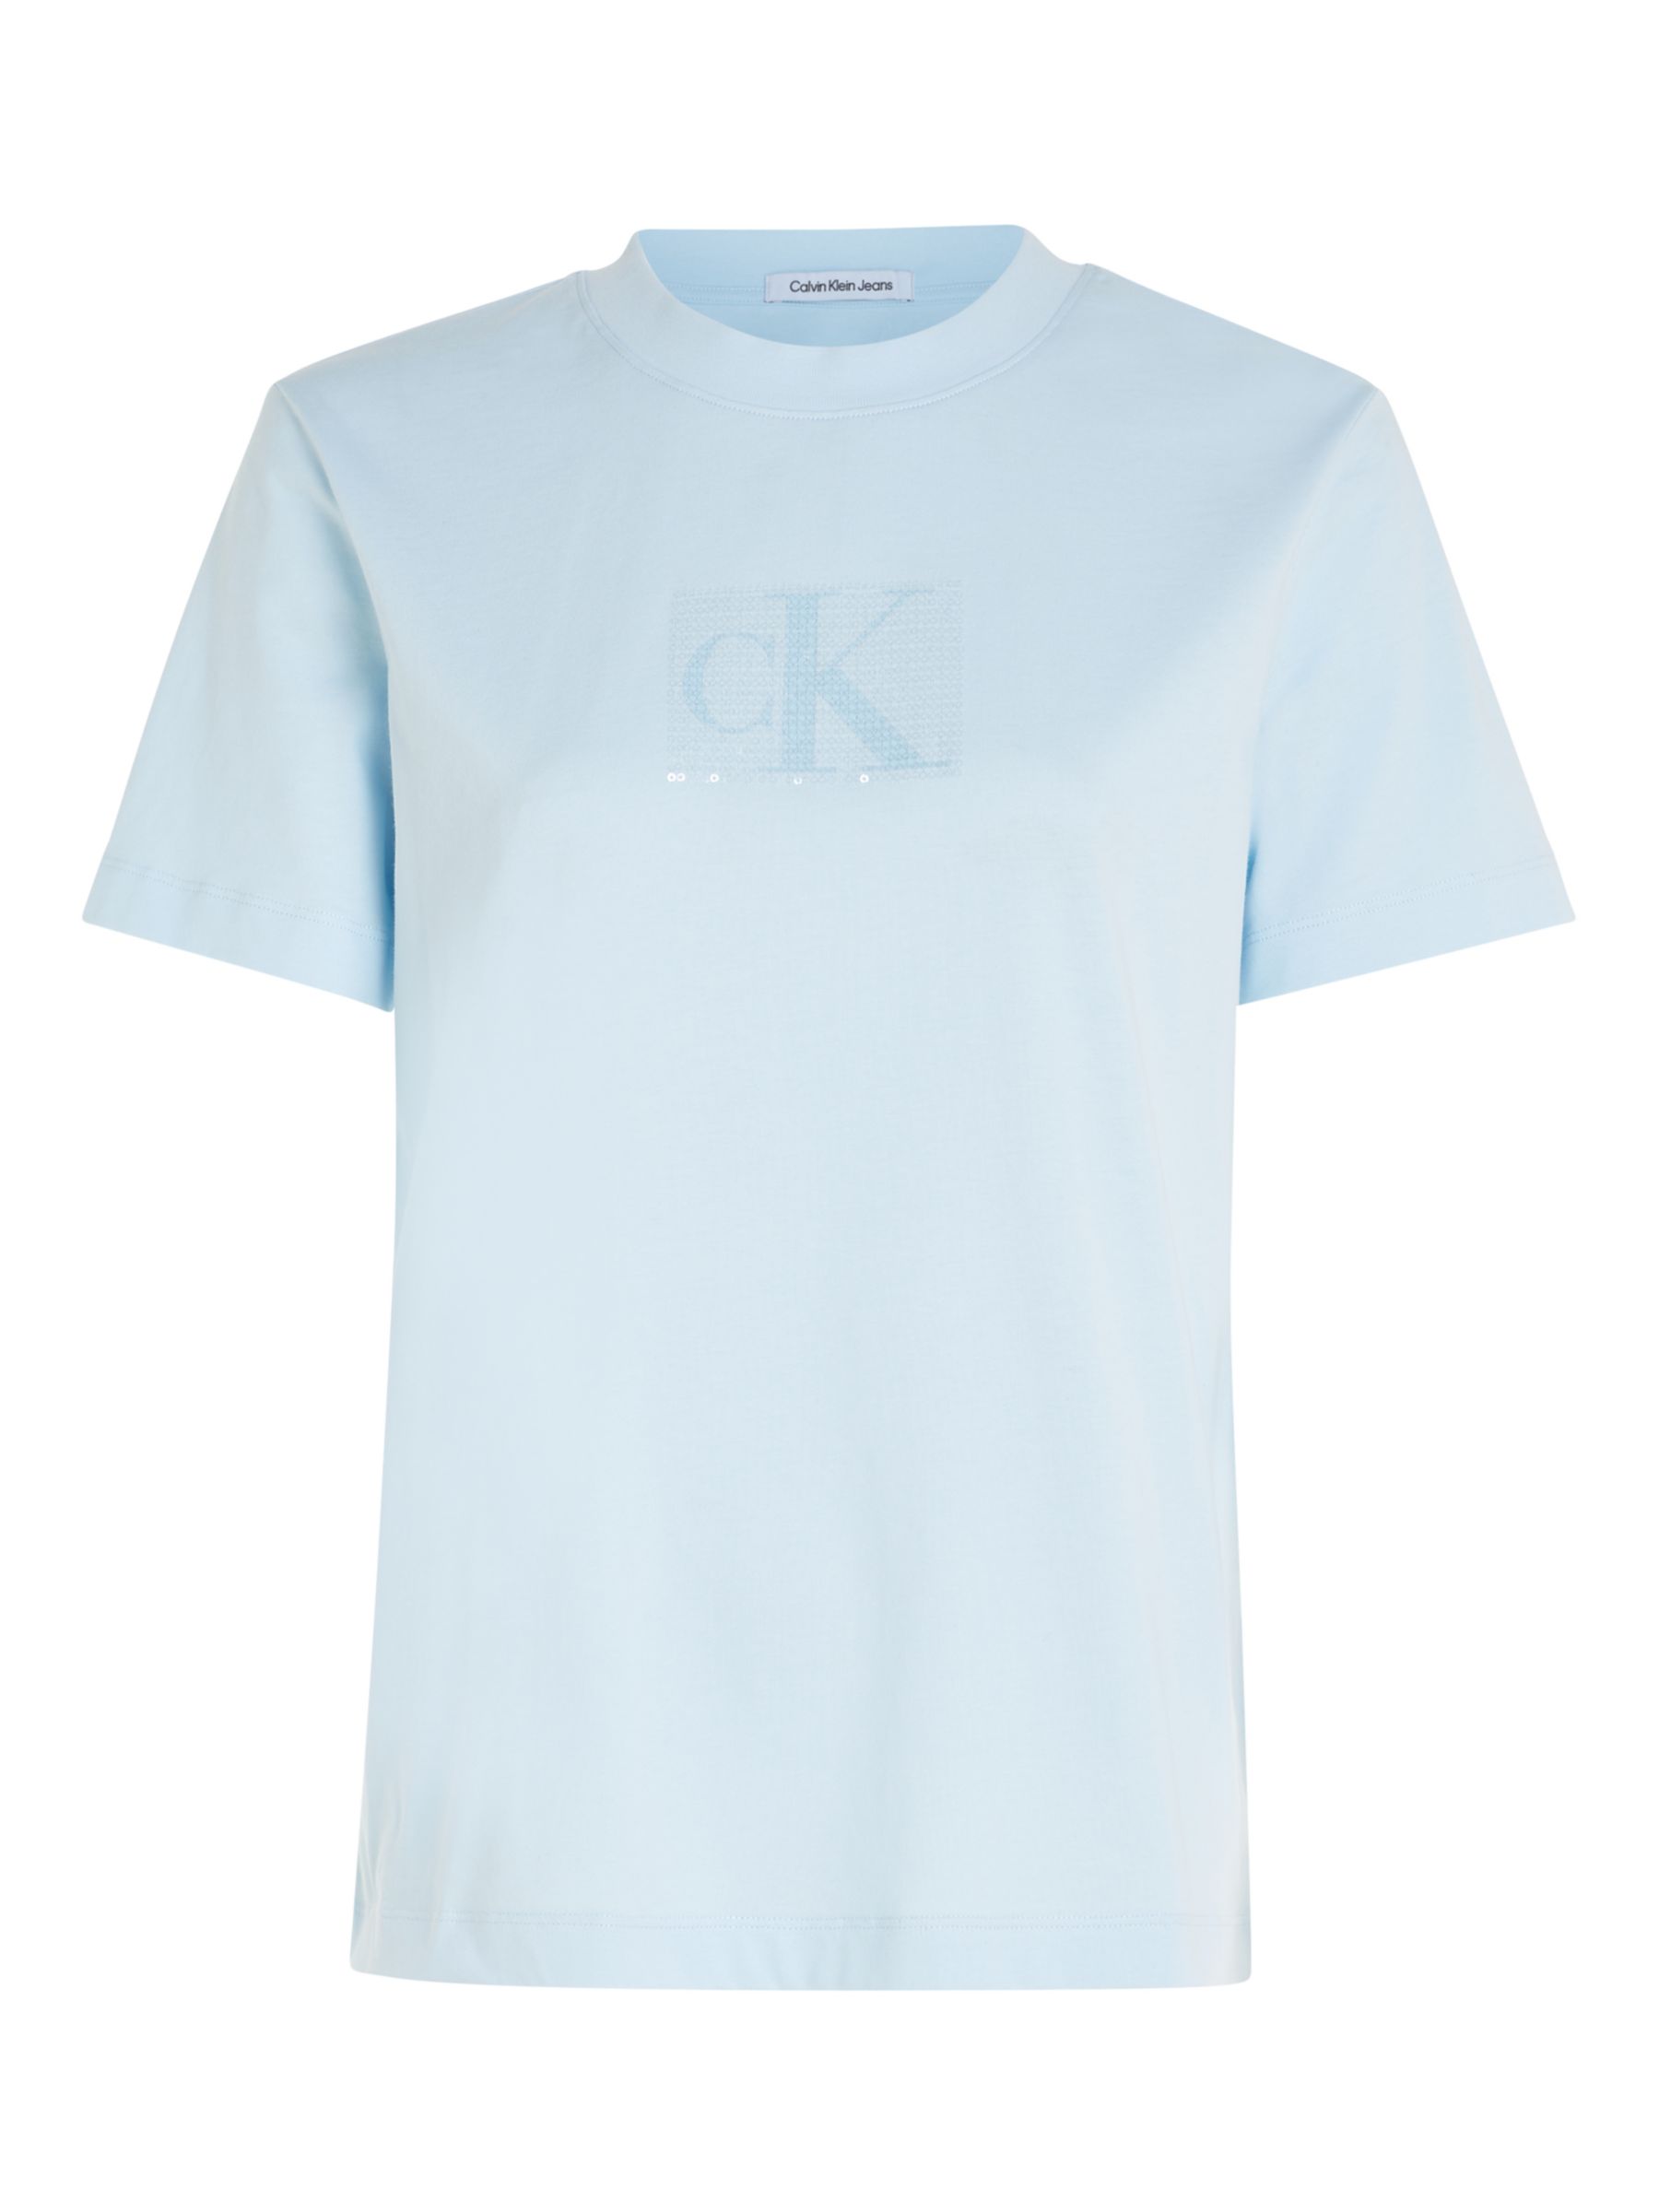 Buy Calvin Klein Underwear Men White Crew Neck Solid T-Shirt